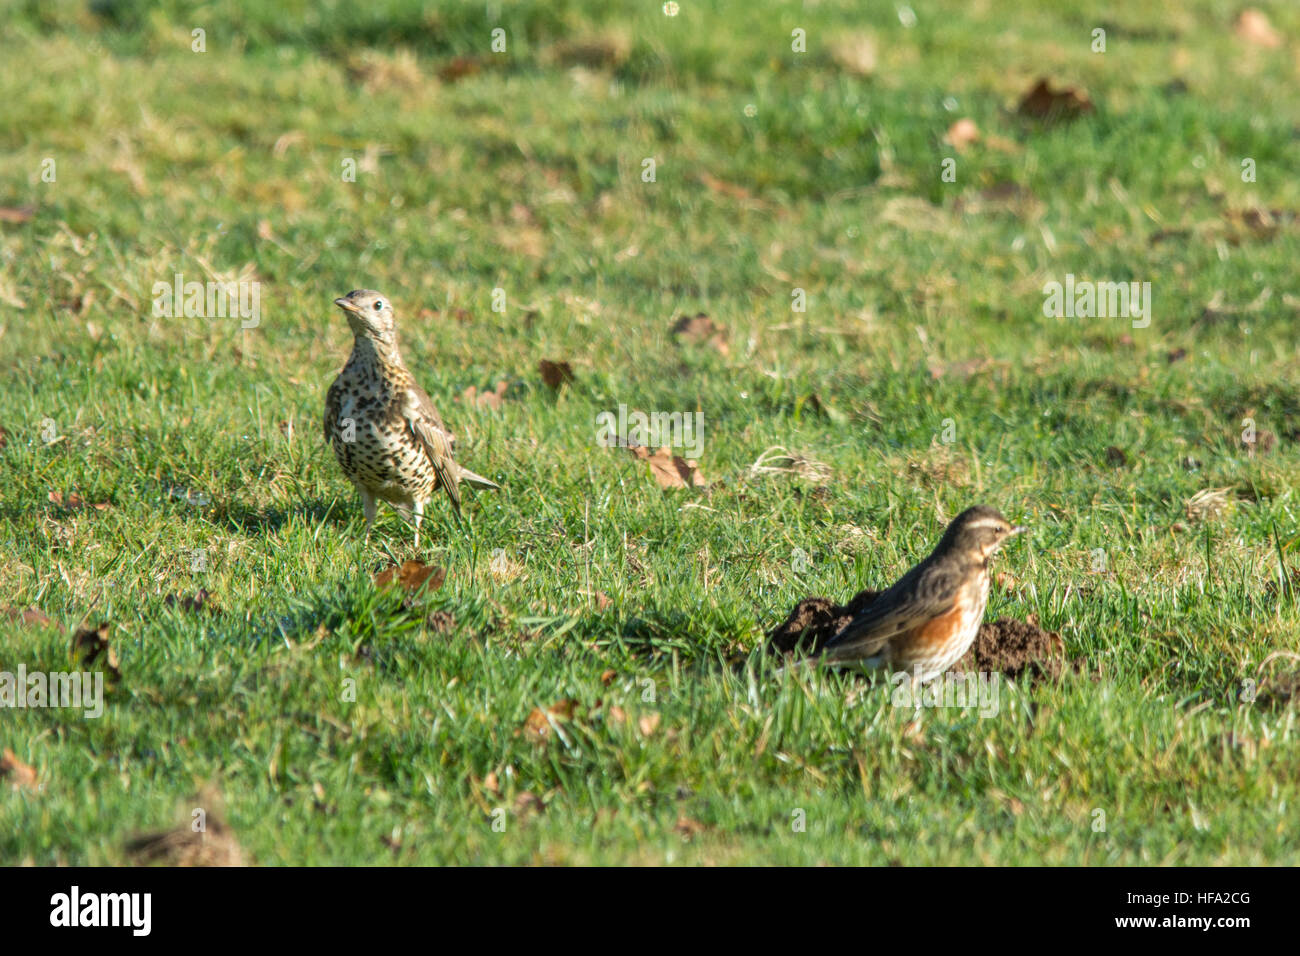 Fieldfare (Turdus pilaris) et redwing (Turdus iliacus), migrants d'hiver dans la famille de la muguet, se nourrissant dans un champ, Royaume-Uni, décembre Banque D'Images